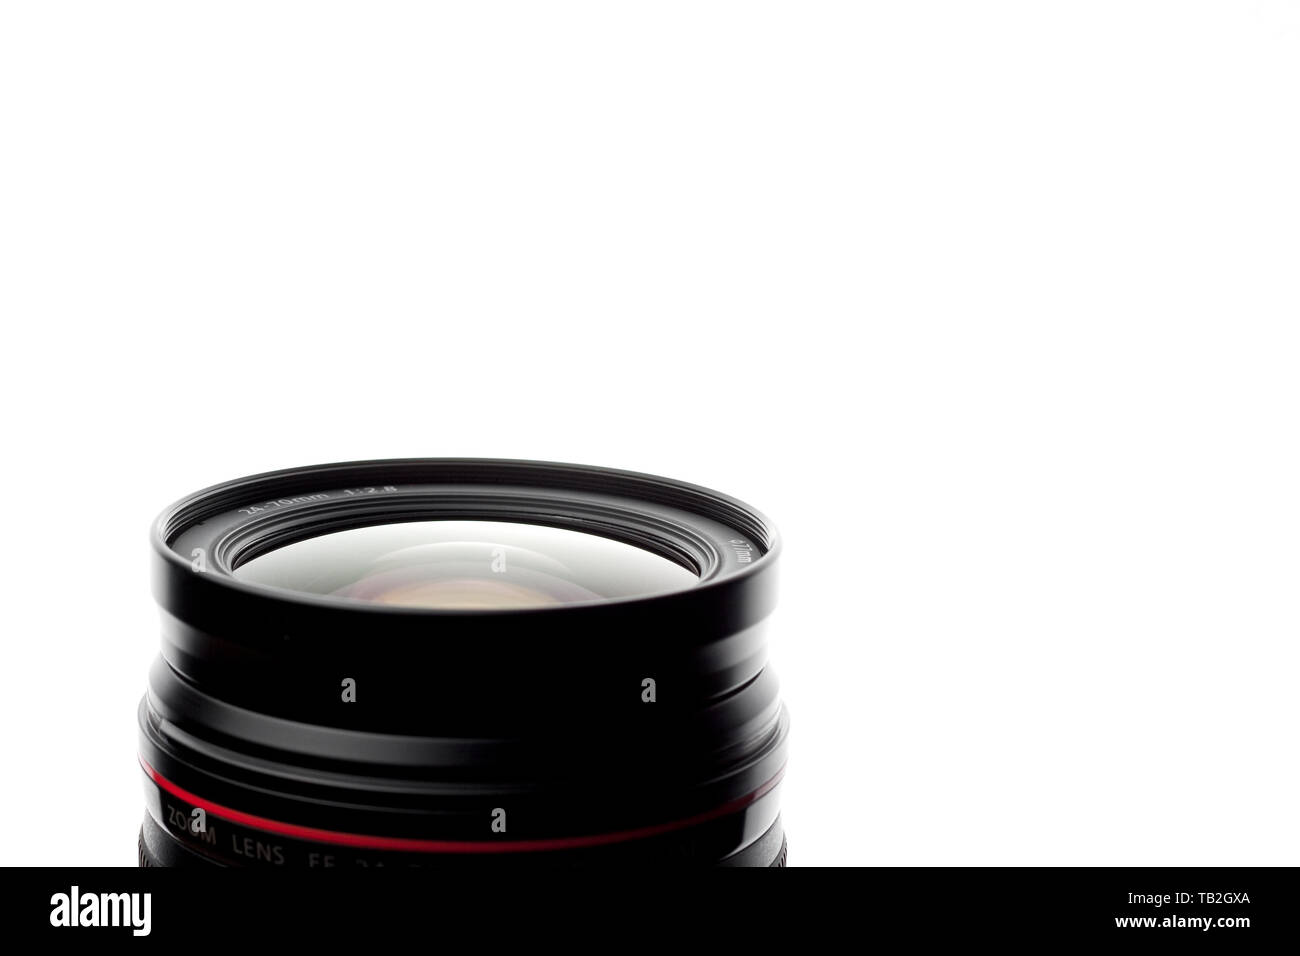 Ein Canon 24-70 mm f/2.8 L USM Objektiv fotografiert vor einem weißen Hintergrund. Stockfoto